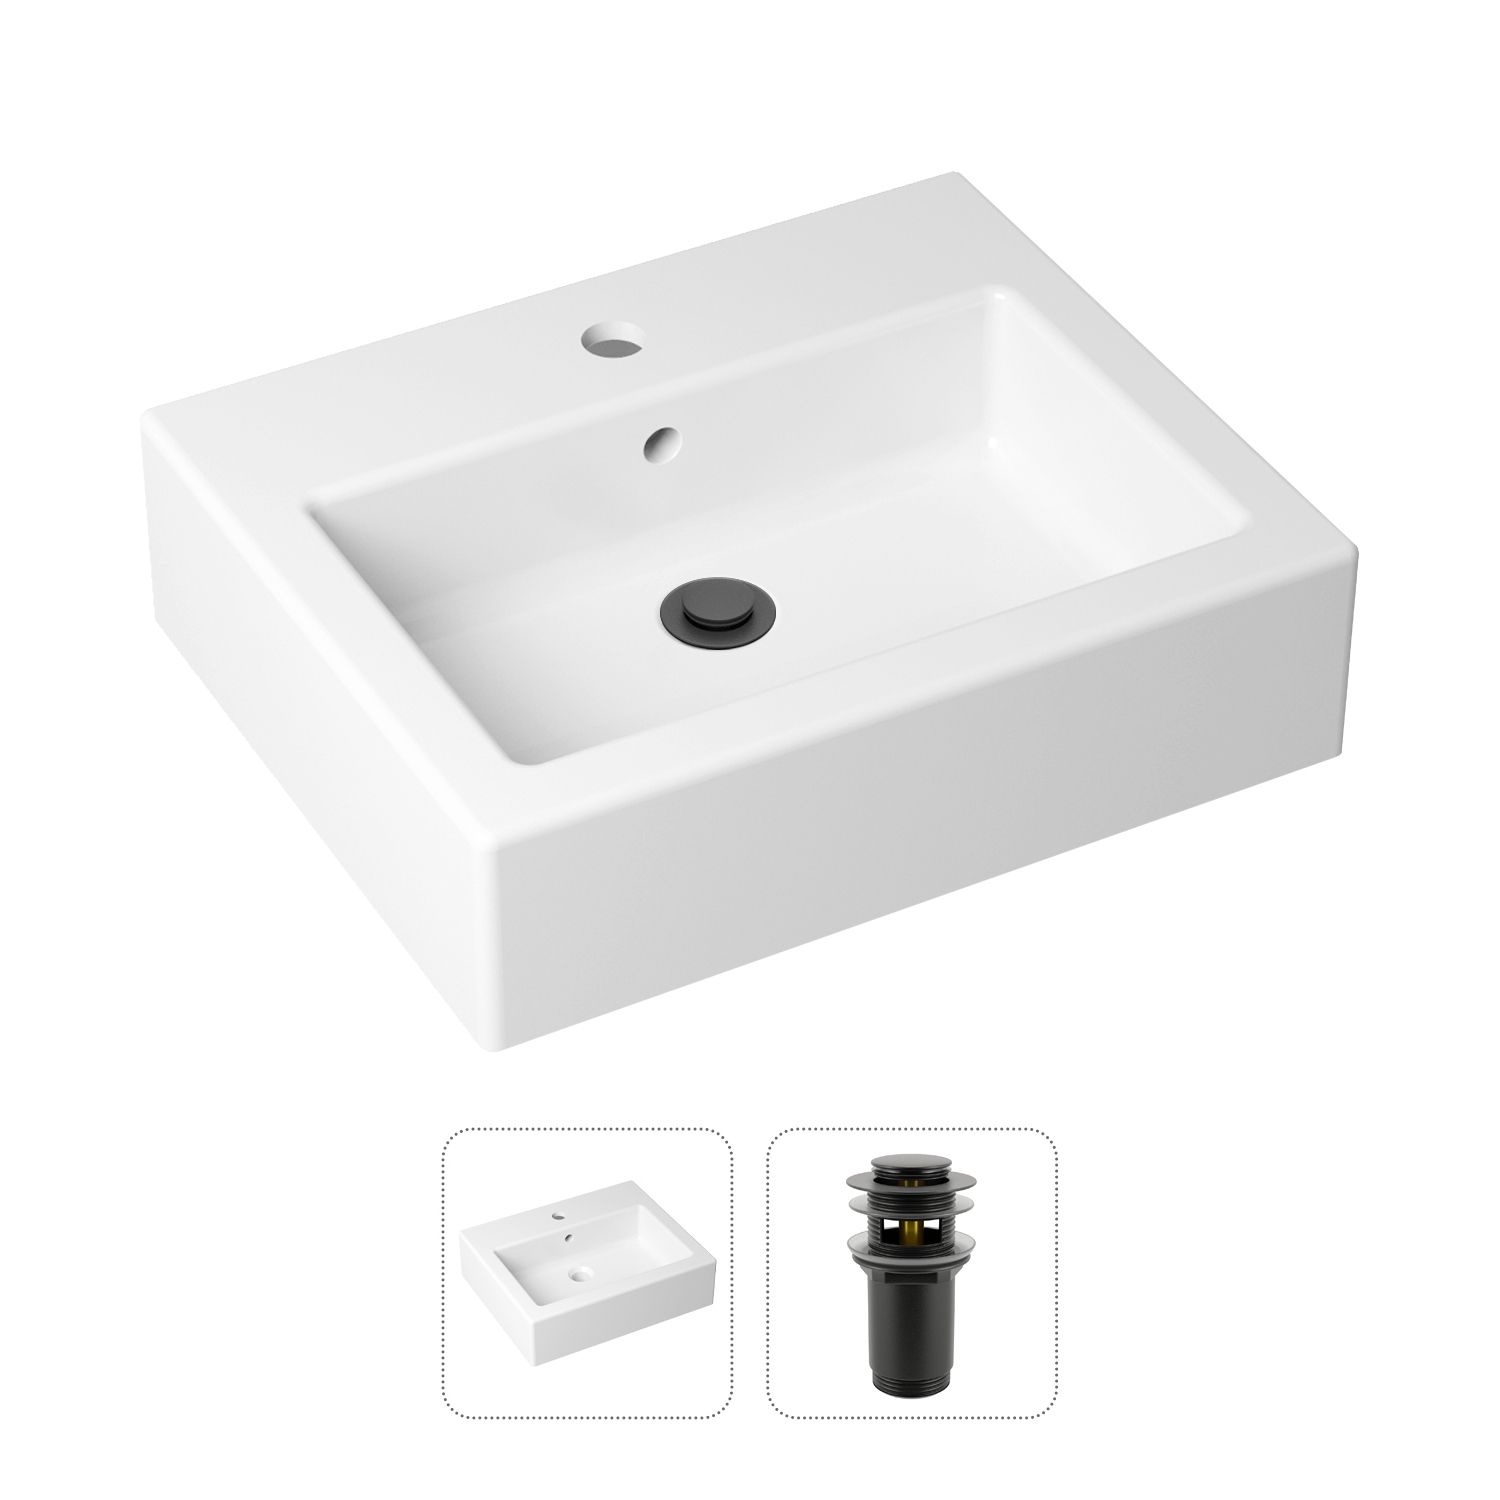 фото Комплект 2 в 1 lavinia boho bathroom sink 21520910: накладная раковина, донный клапан